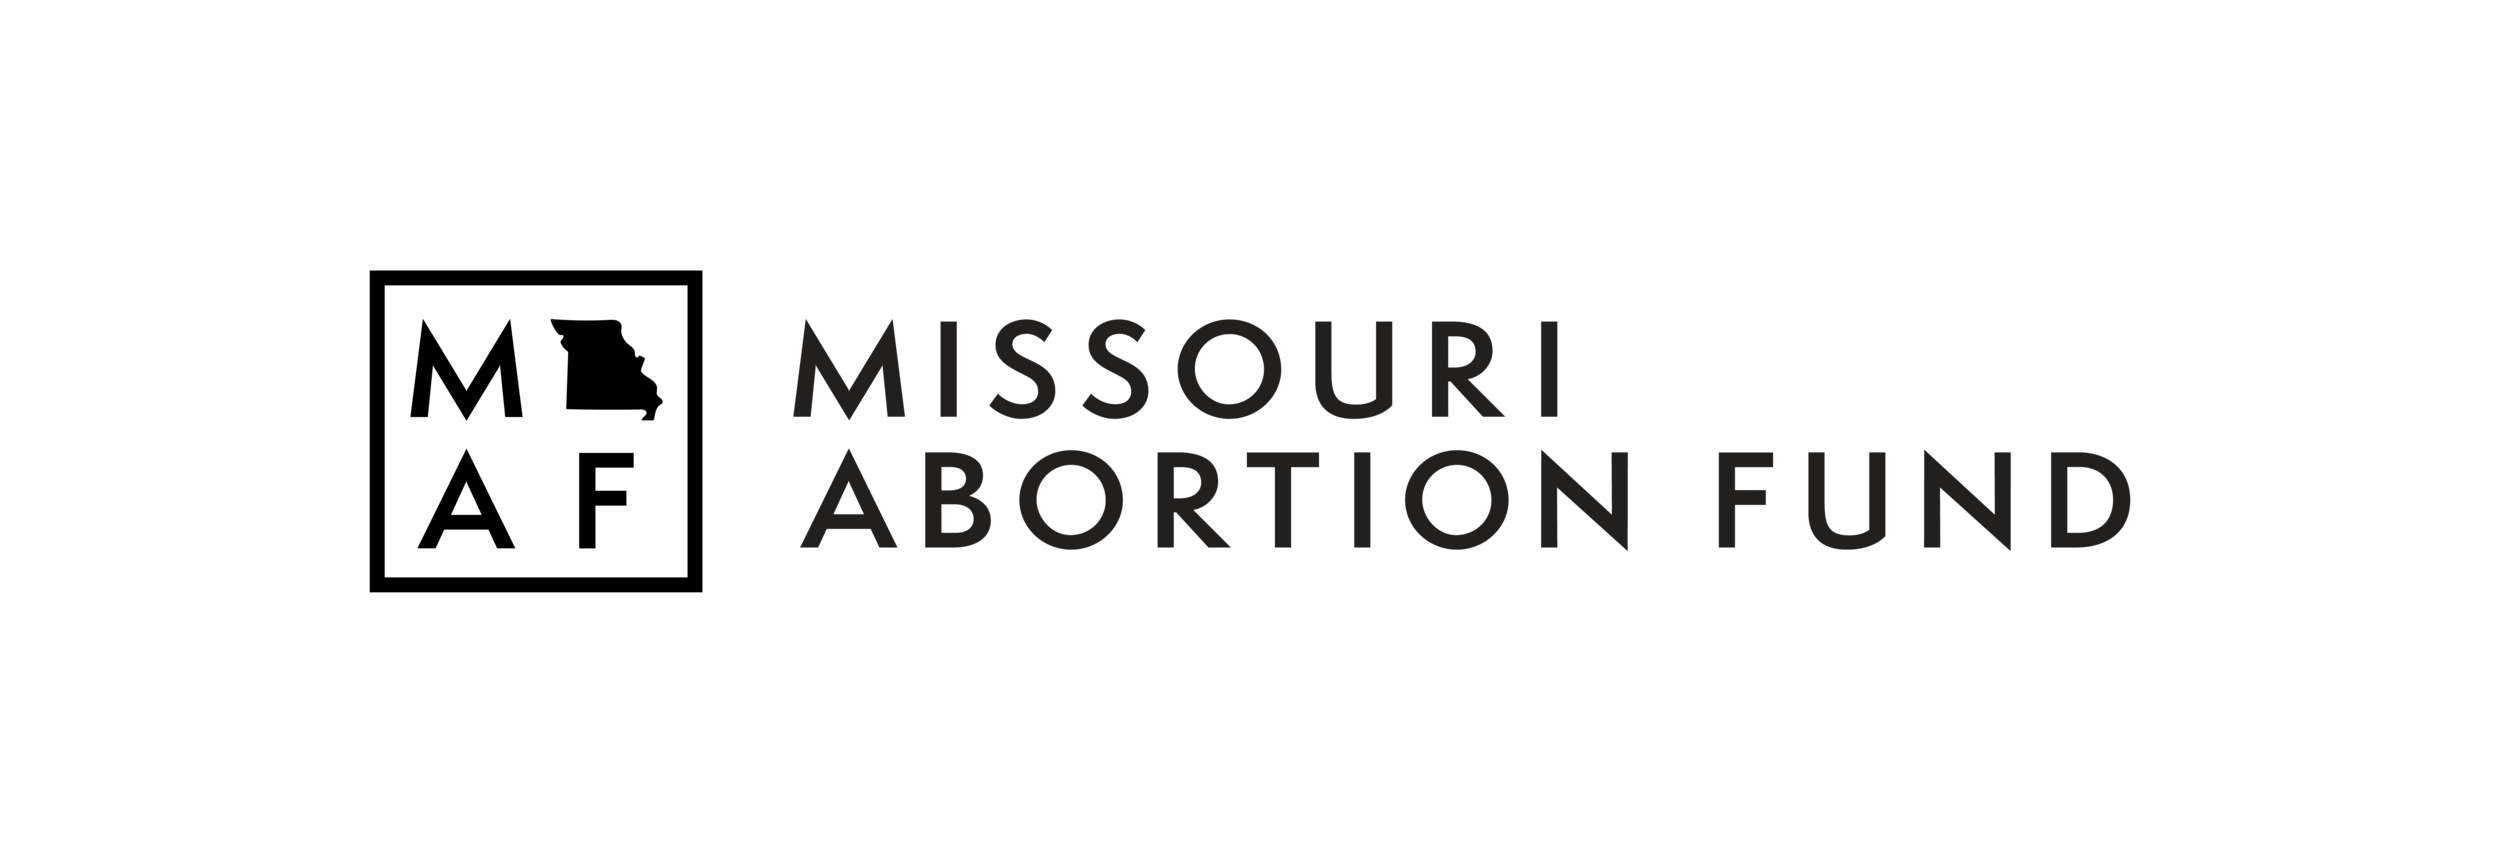 Missouri Abortion Fund